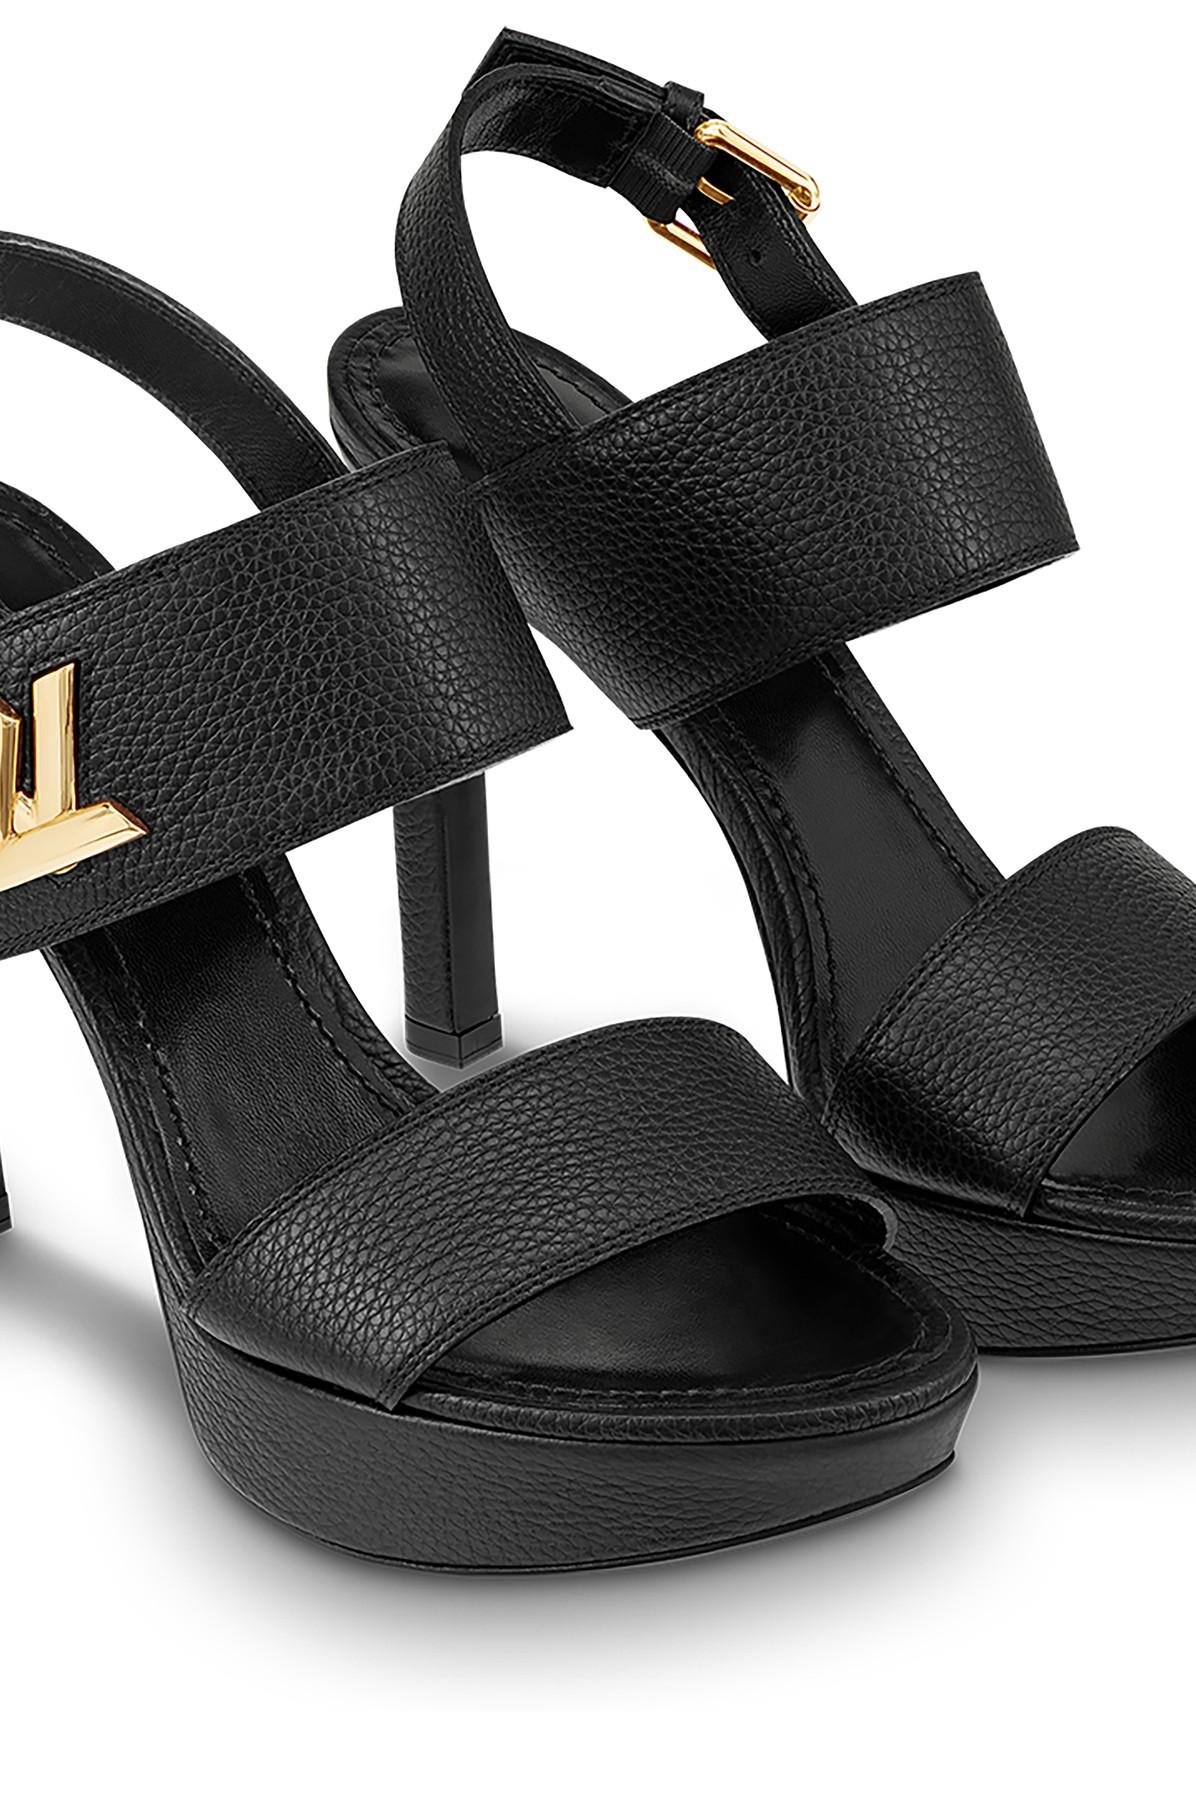 Louis Vuitton Trinity Sandal BLACK. Size 38.0